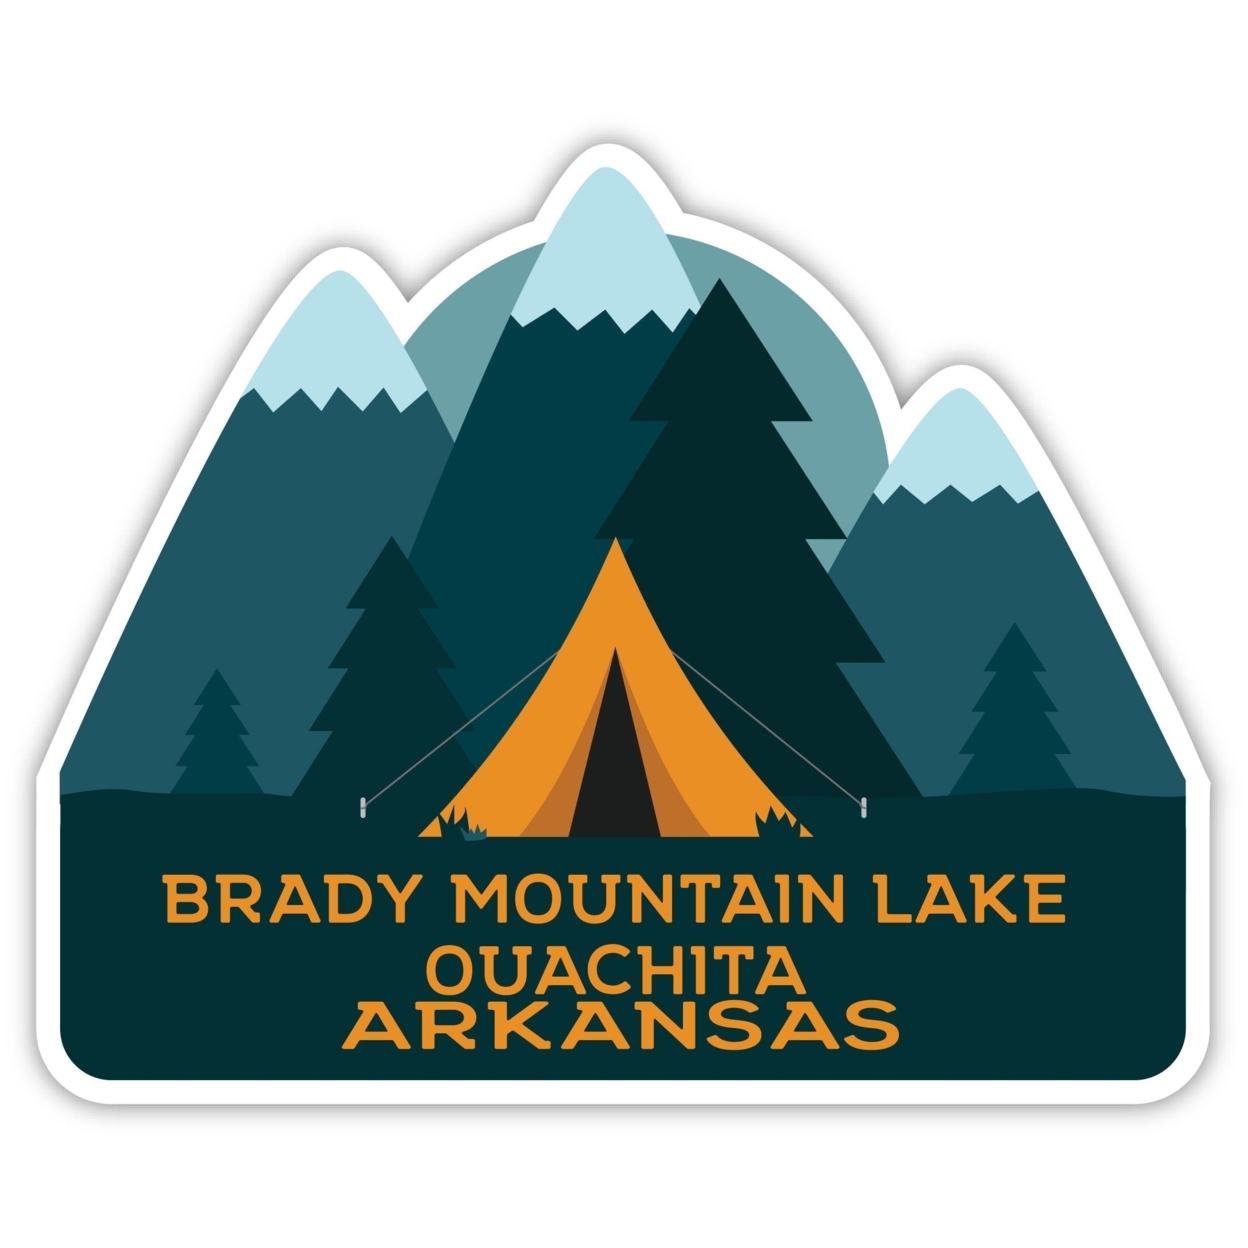 Brady Mountain Lake Ouachita Arkansas Souvenir Decorative Stickers (Choose Theme And Size) - 4-Pack, 10-Inch, Tent